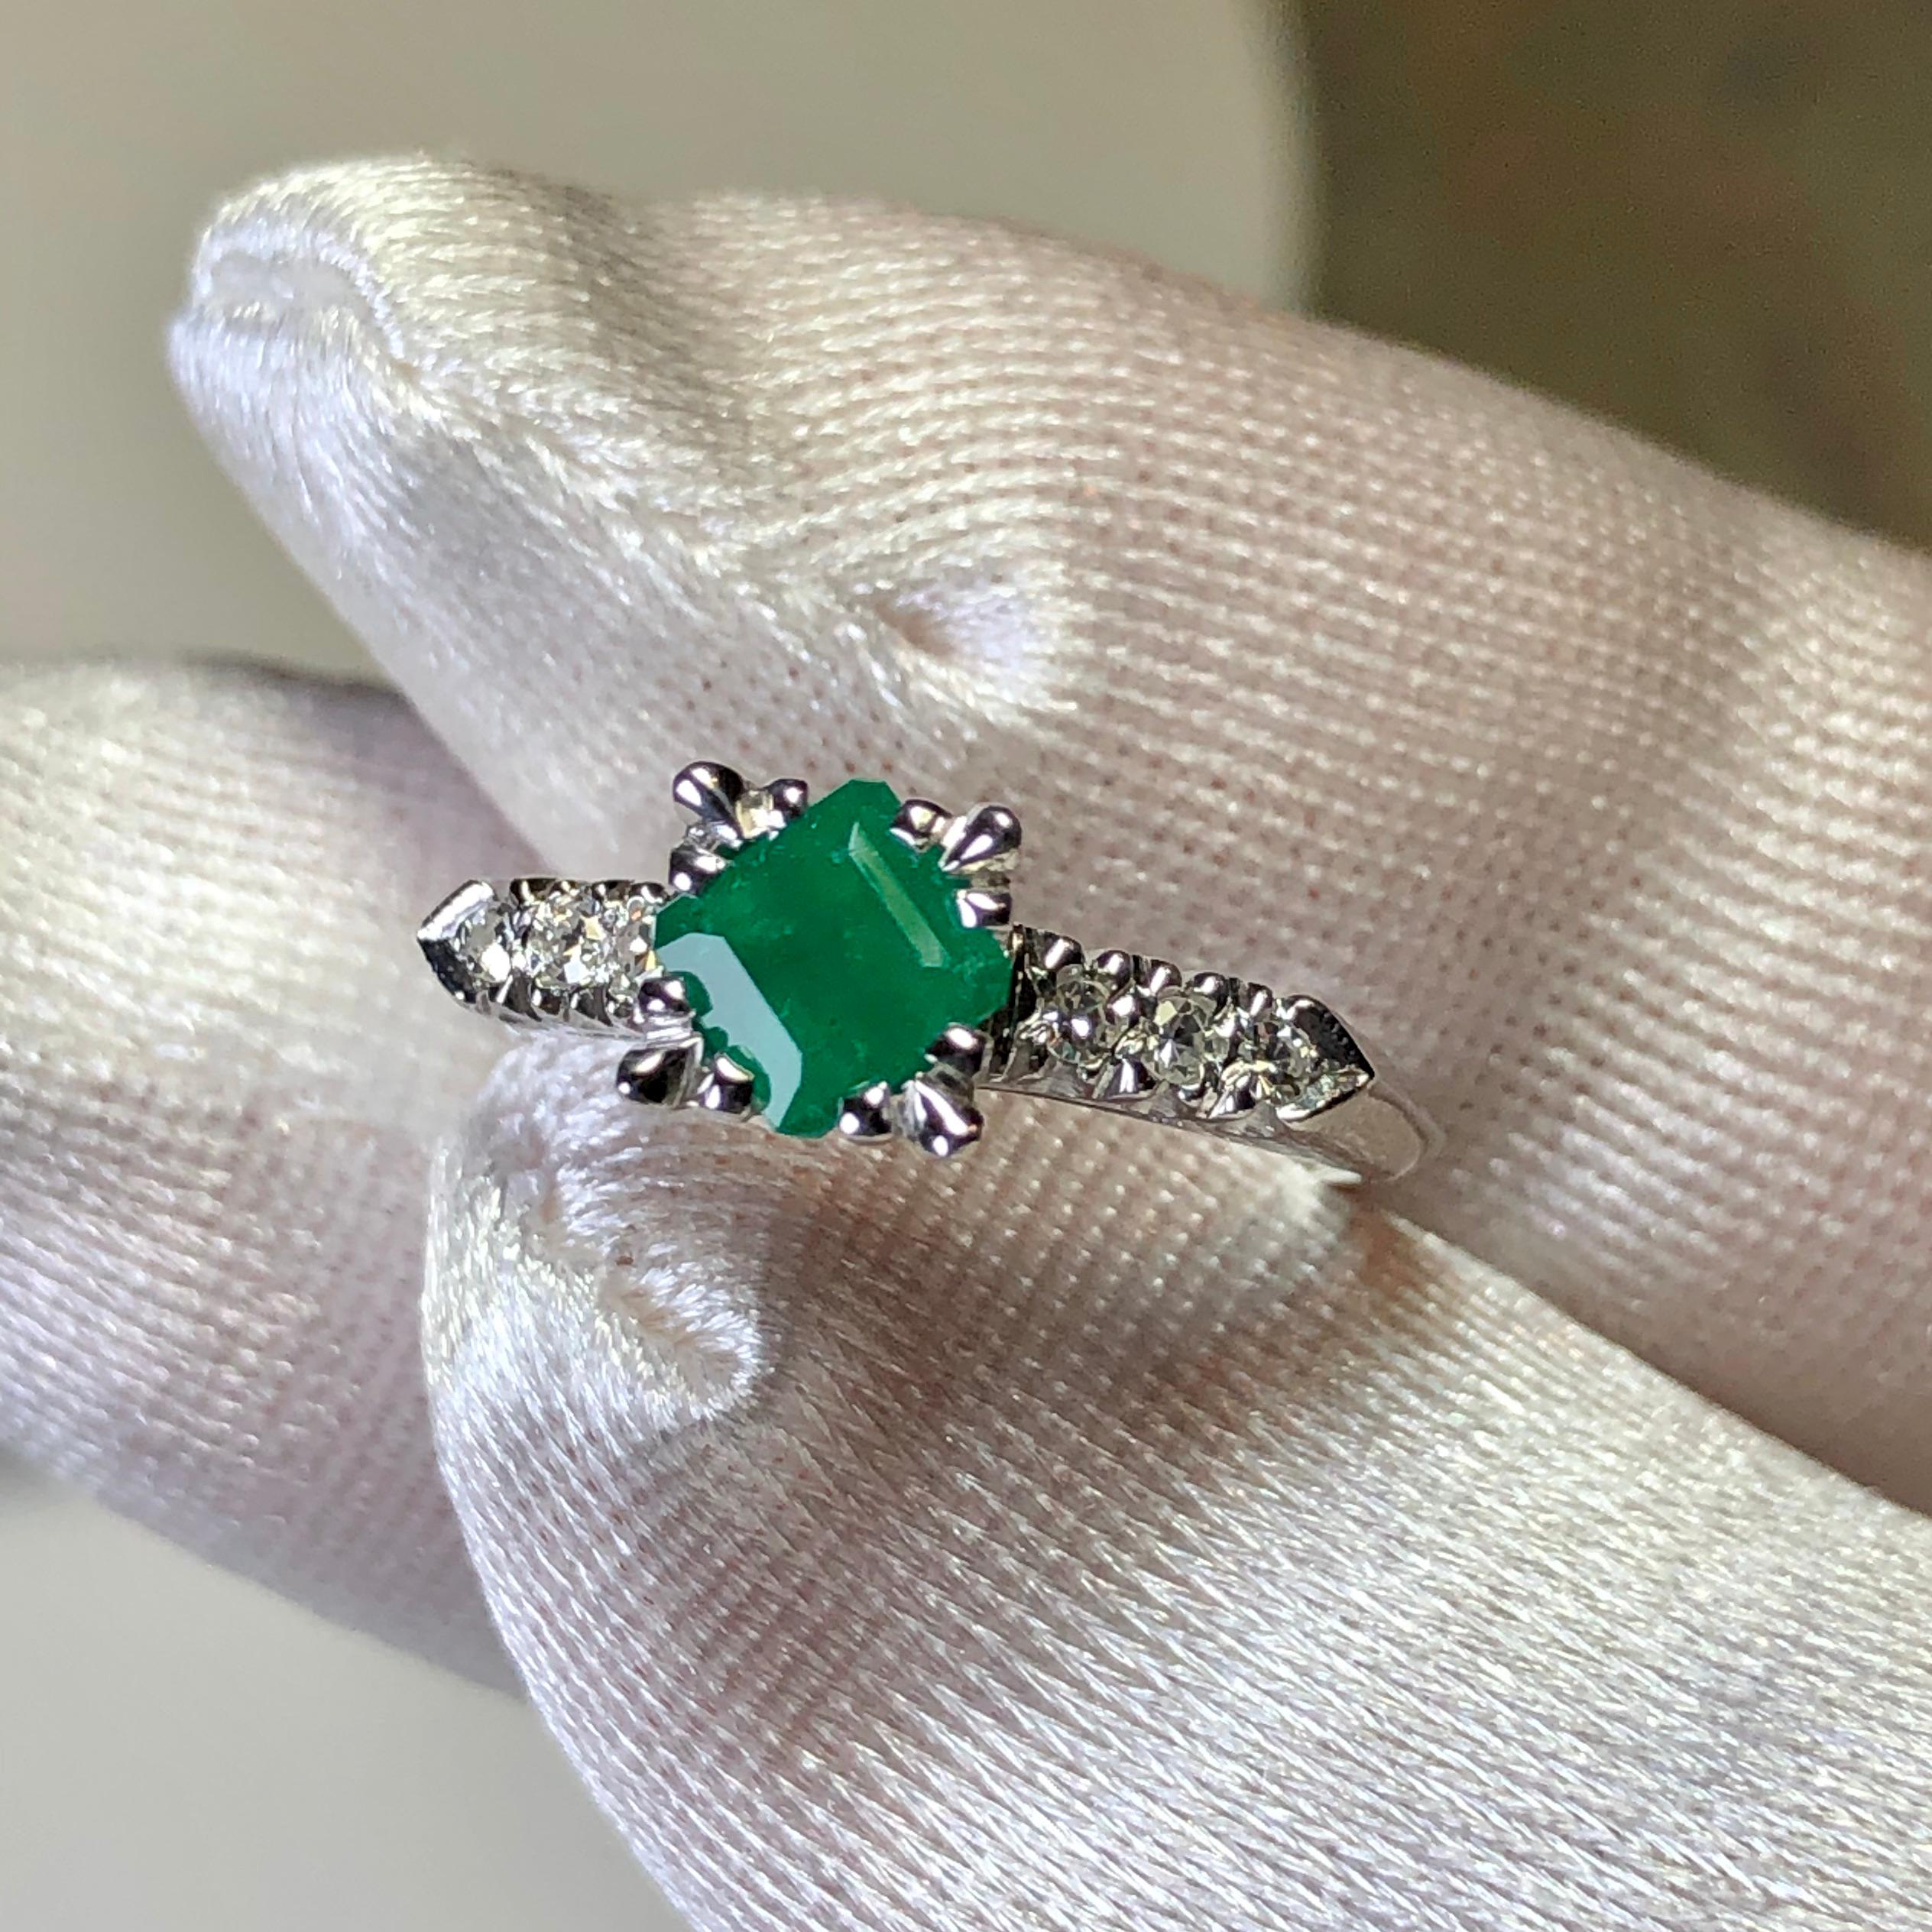 Natürlicher quadratischer Vintage-Smaragd von 0,71 Karat mit intensivem, tiefgrünem kolumbianischen Smaragd, Reinheit VS, gefasst in einem Solitär-Verlobungsring aus Platin im Vintage-Stil. Diamant-Akzent ca. 0,20 Karat G-SI1.
Dieser wunderschöne